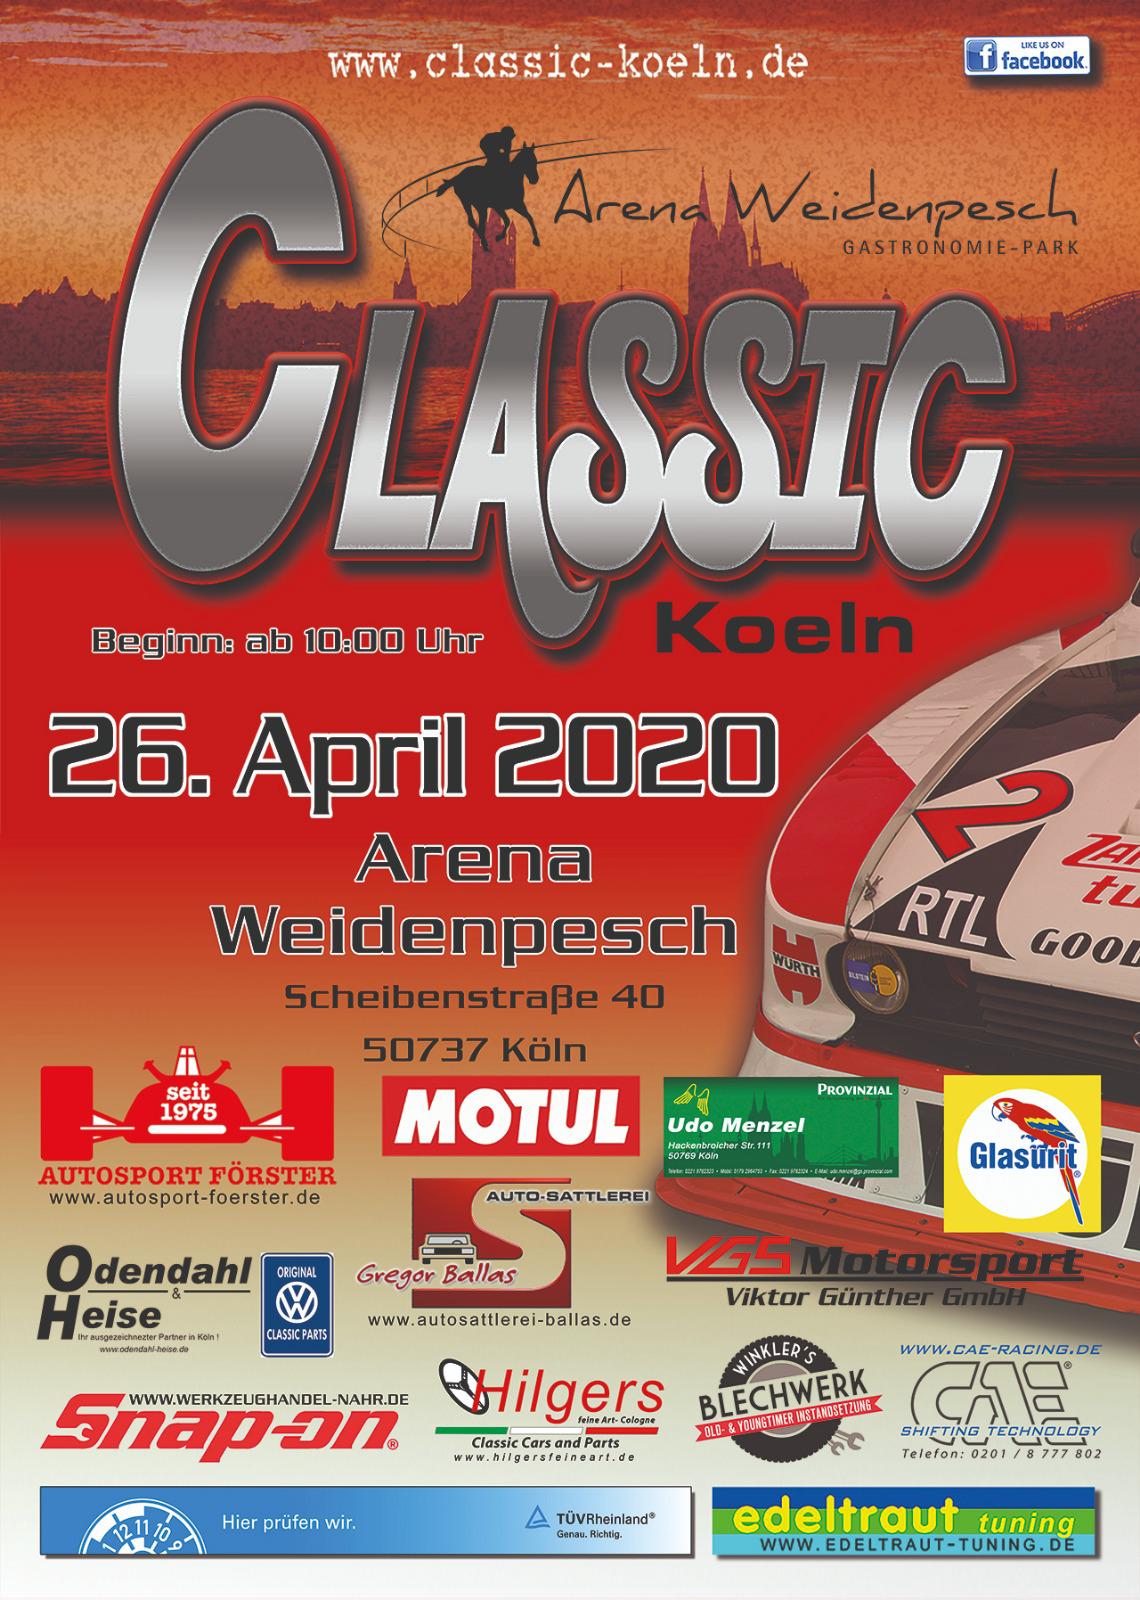 Ahrend02Tuning - Am 26.04.2020 ist es wieder soweit, die Classic Koeln öffnet ab 10:00 Uhr Ihre Pforten in der Arena Weidenpesch.